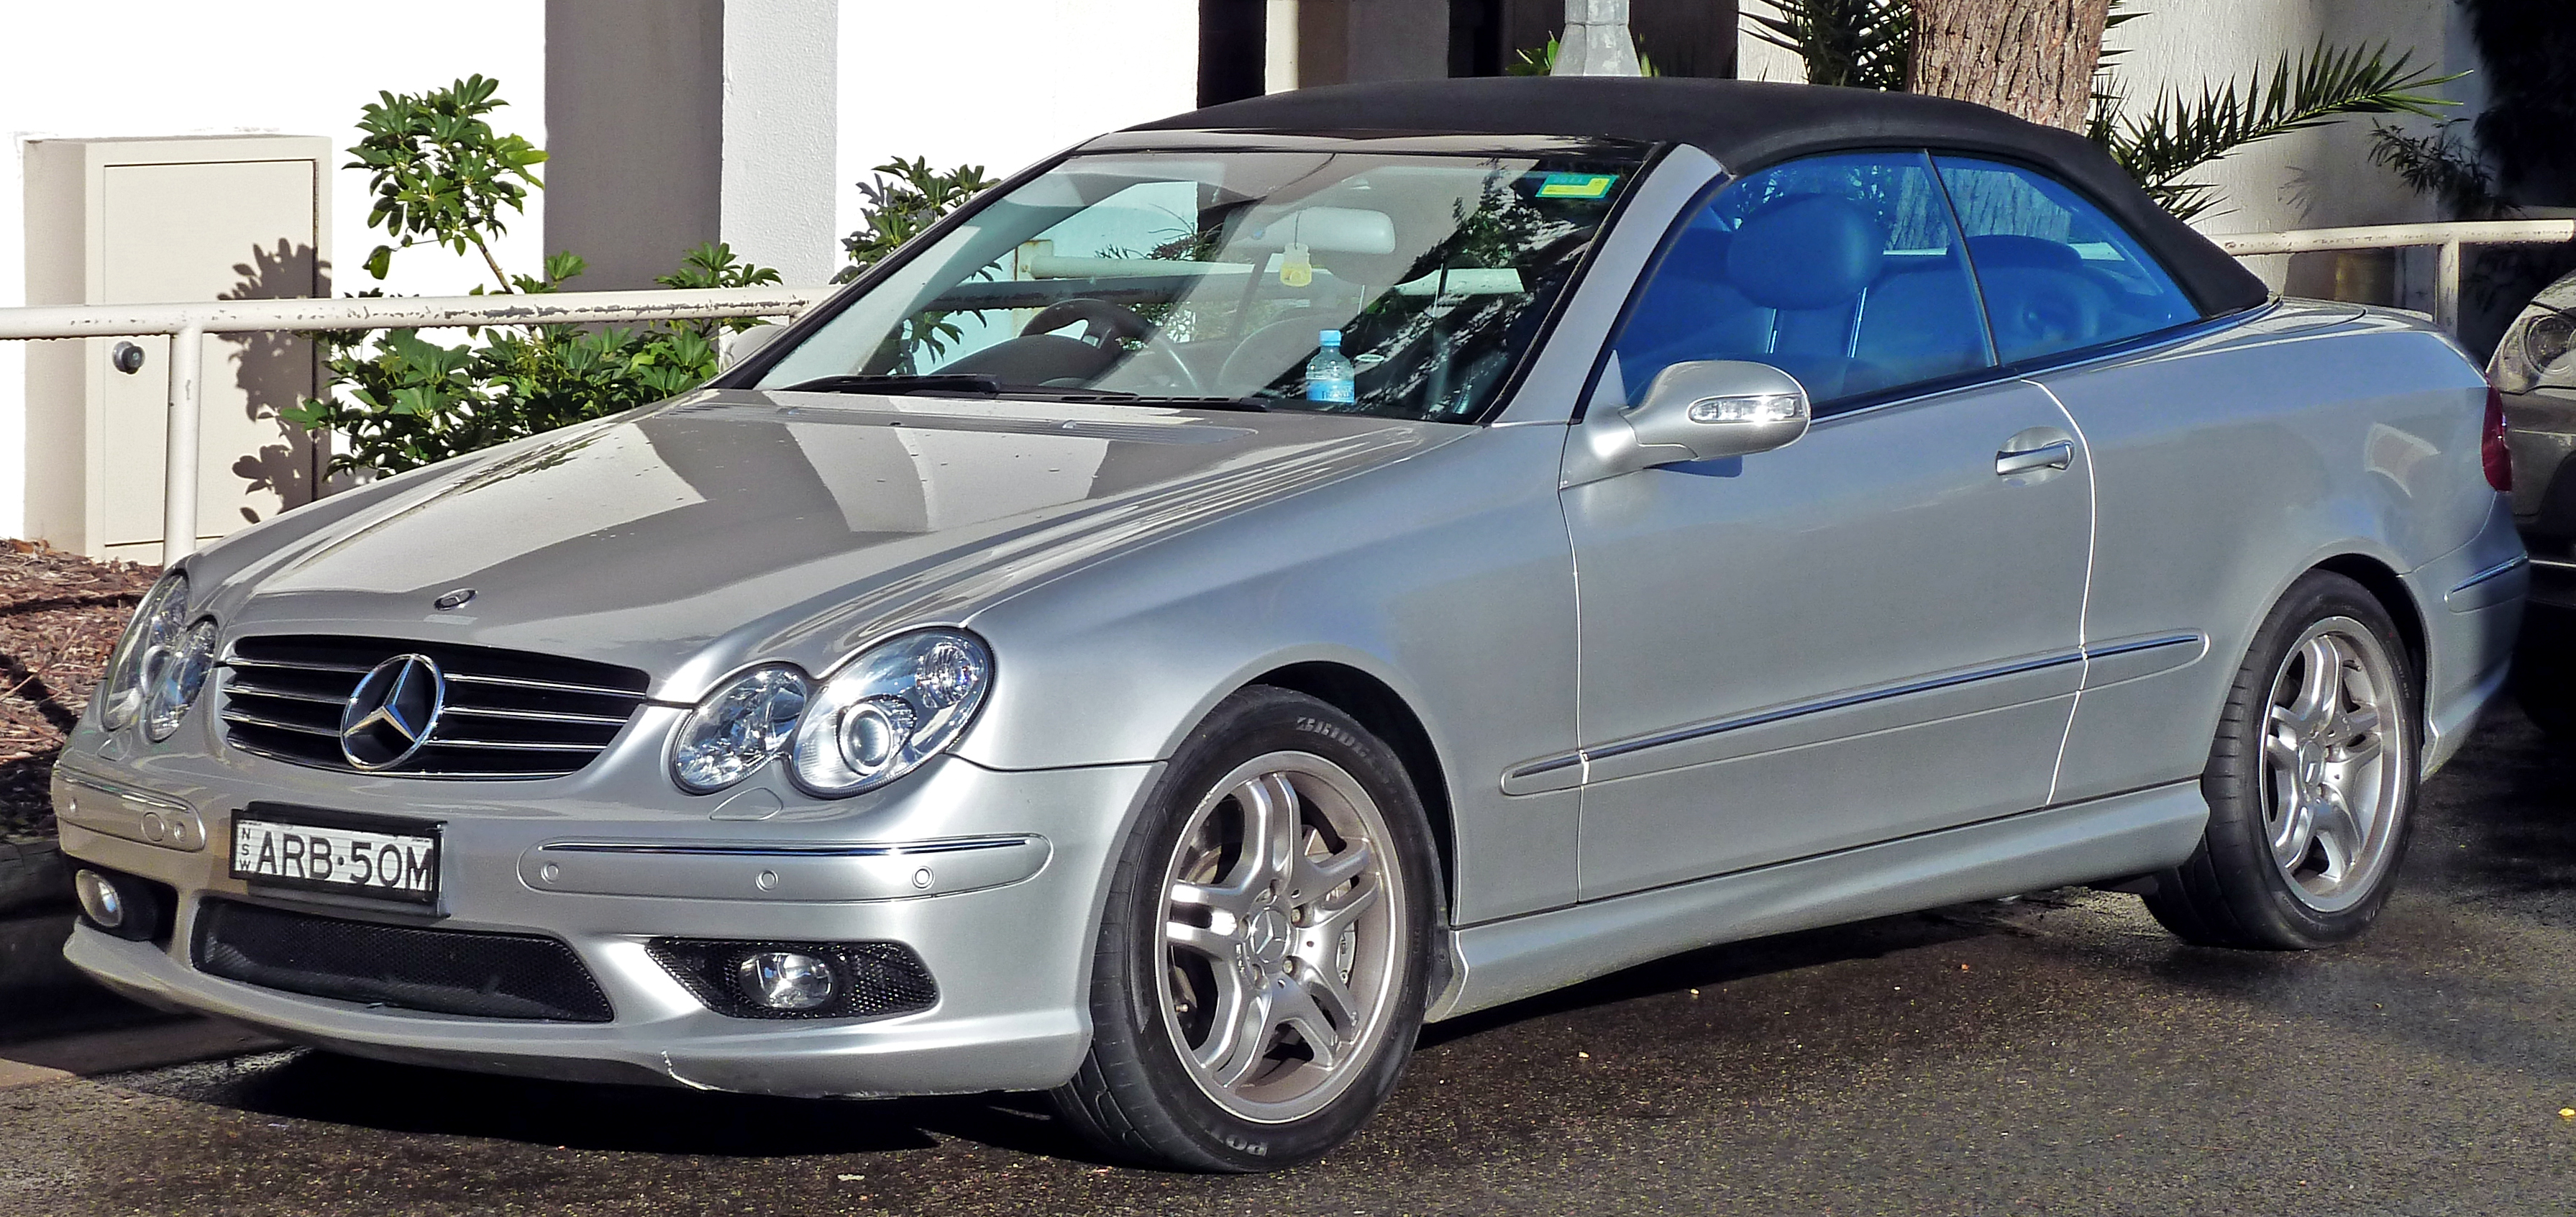 2003-2006 Mercedes-Benz CLK 55 AMG (A209) cabriolet 01